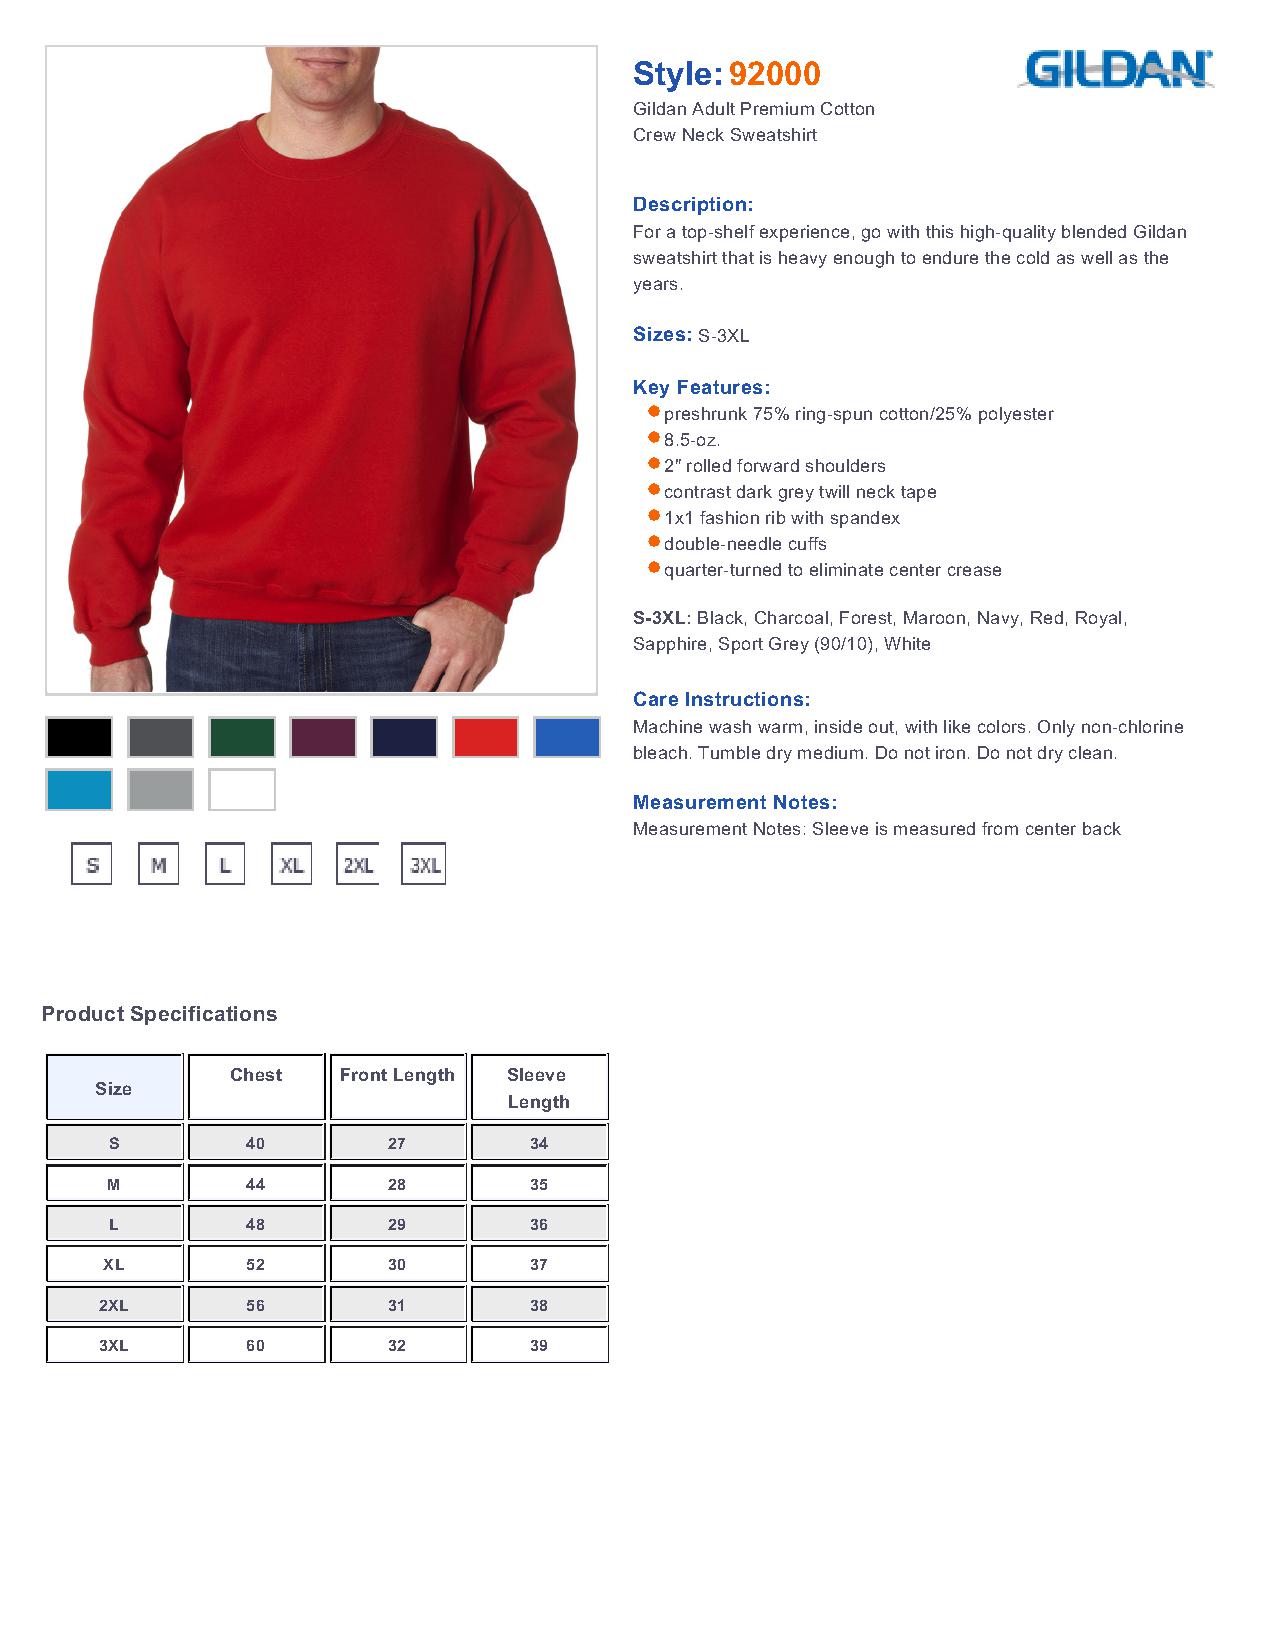 Gildan 92000 - Adult Premium Cotton Crew Neck Sweatshirt $13.28 - Men's ...